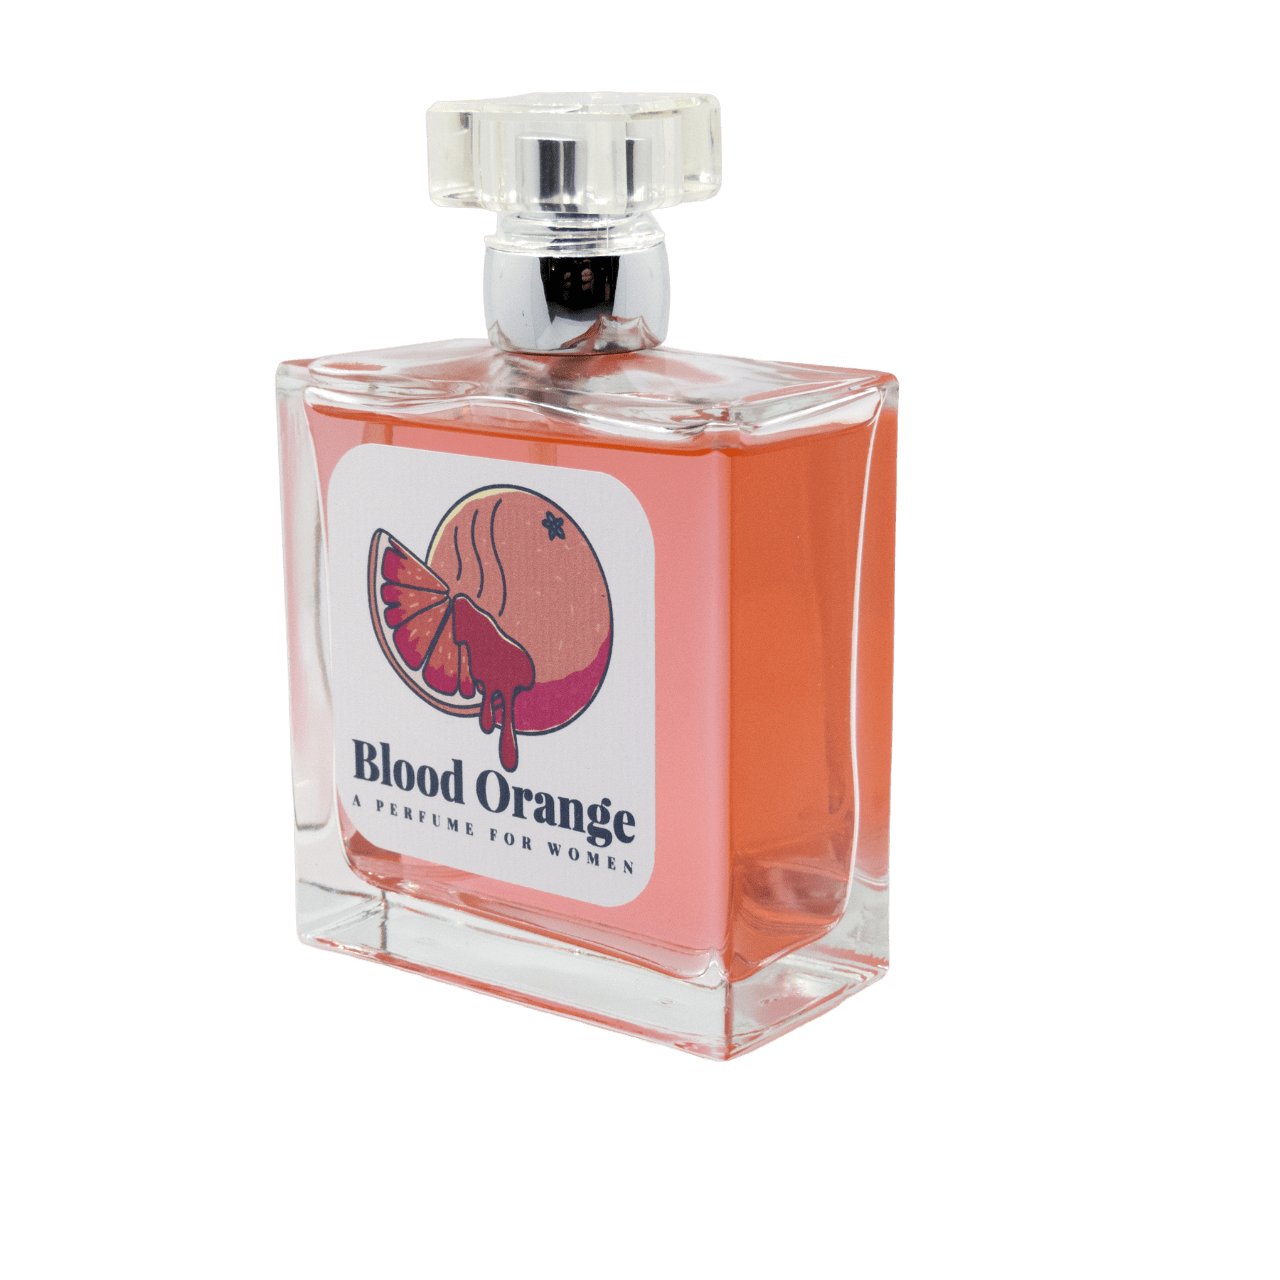 Blood Orange Perfume